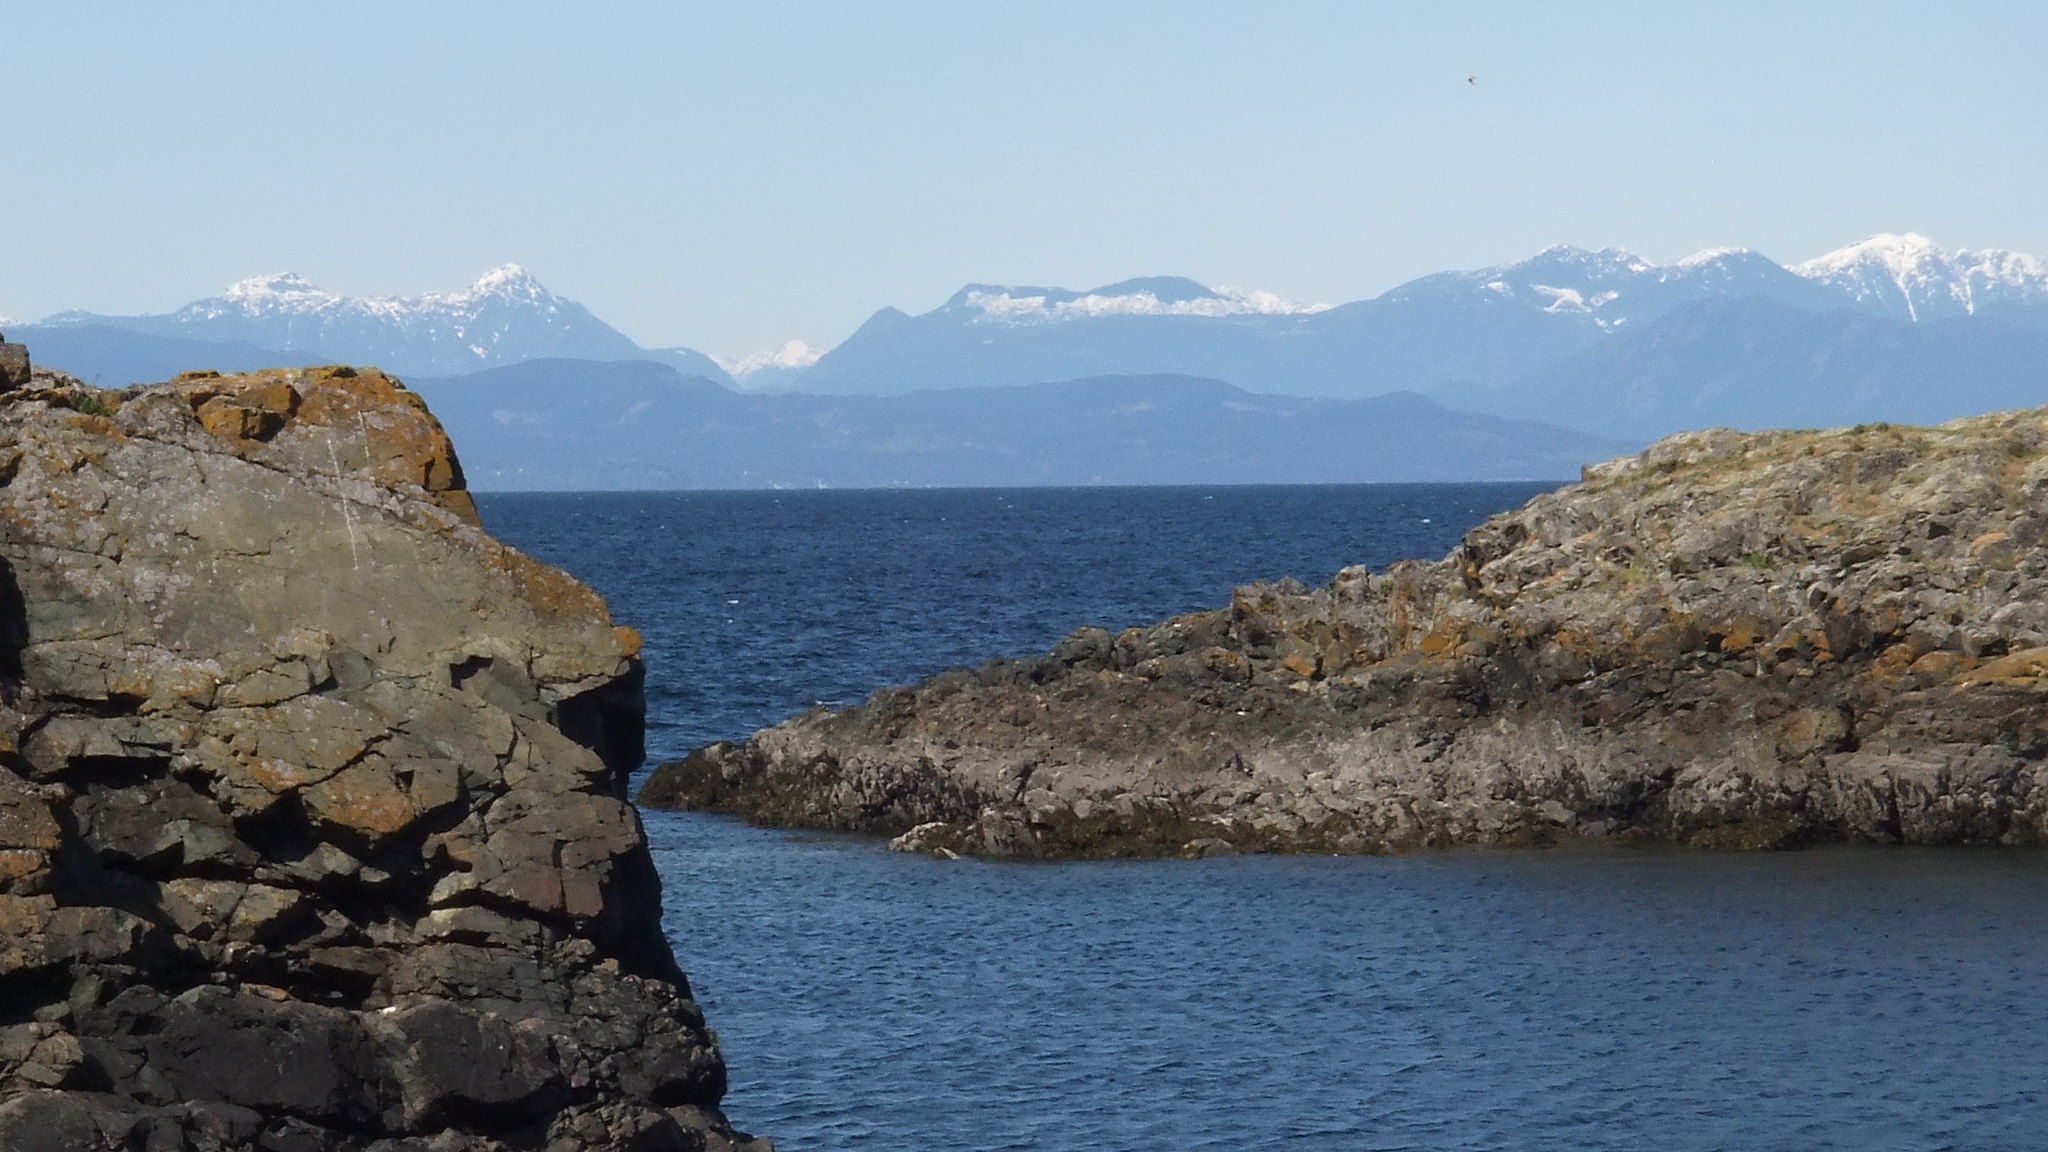 Montañas nevadas se pueden ver al otro lado del océano desde una orilla rocosa.